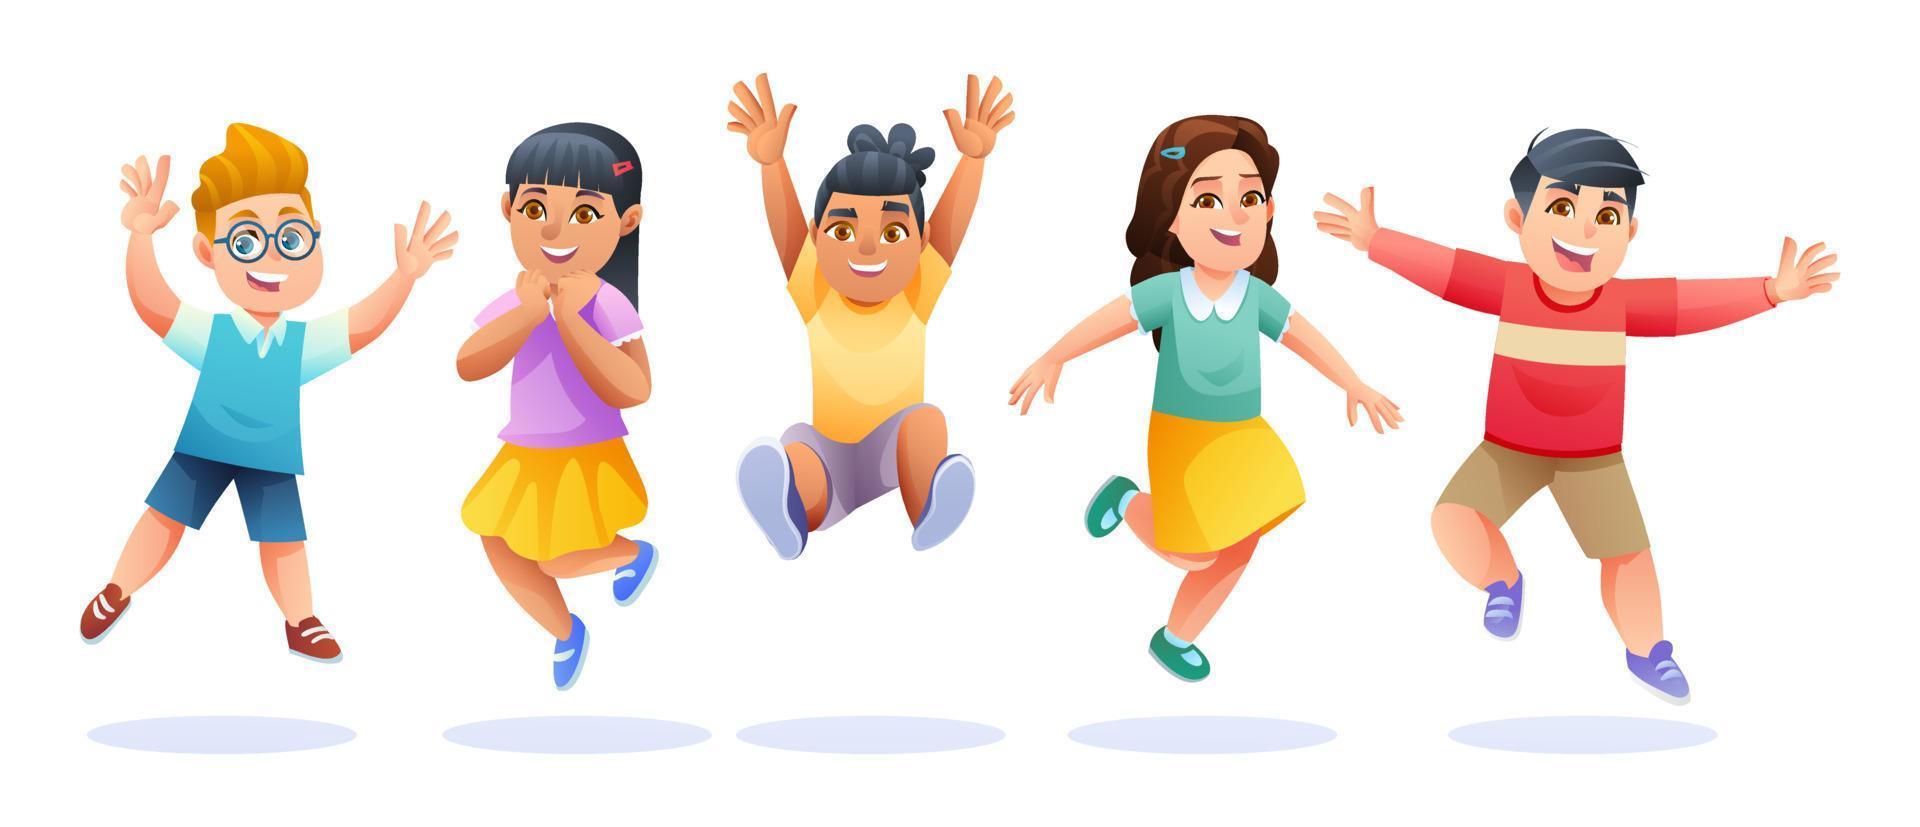 niños alegres saltando juntos ilustración de dibujos animados vector